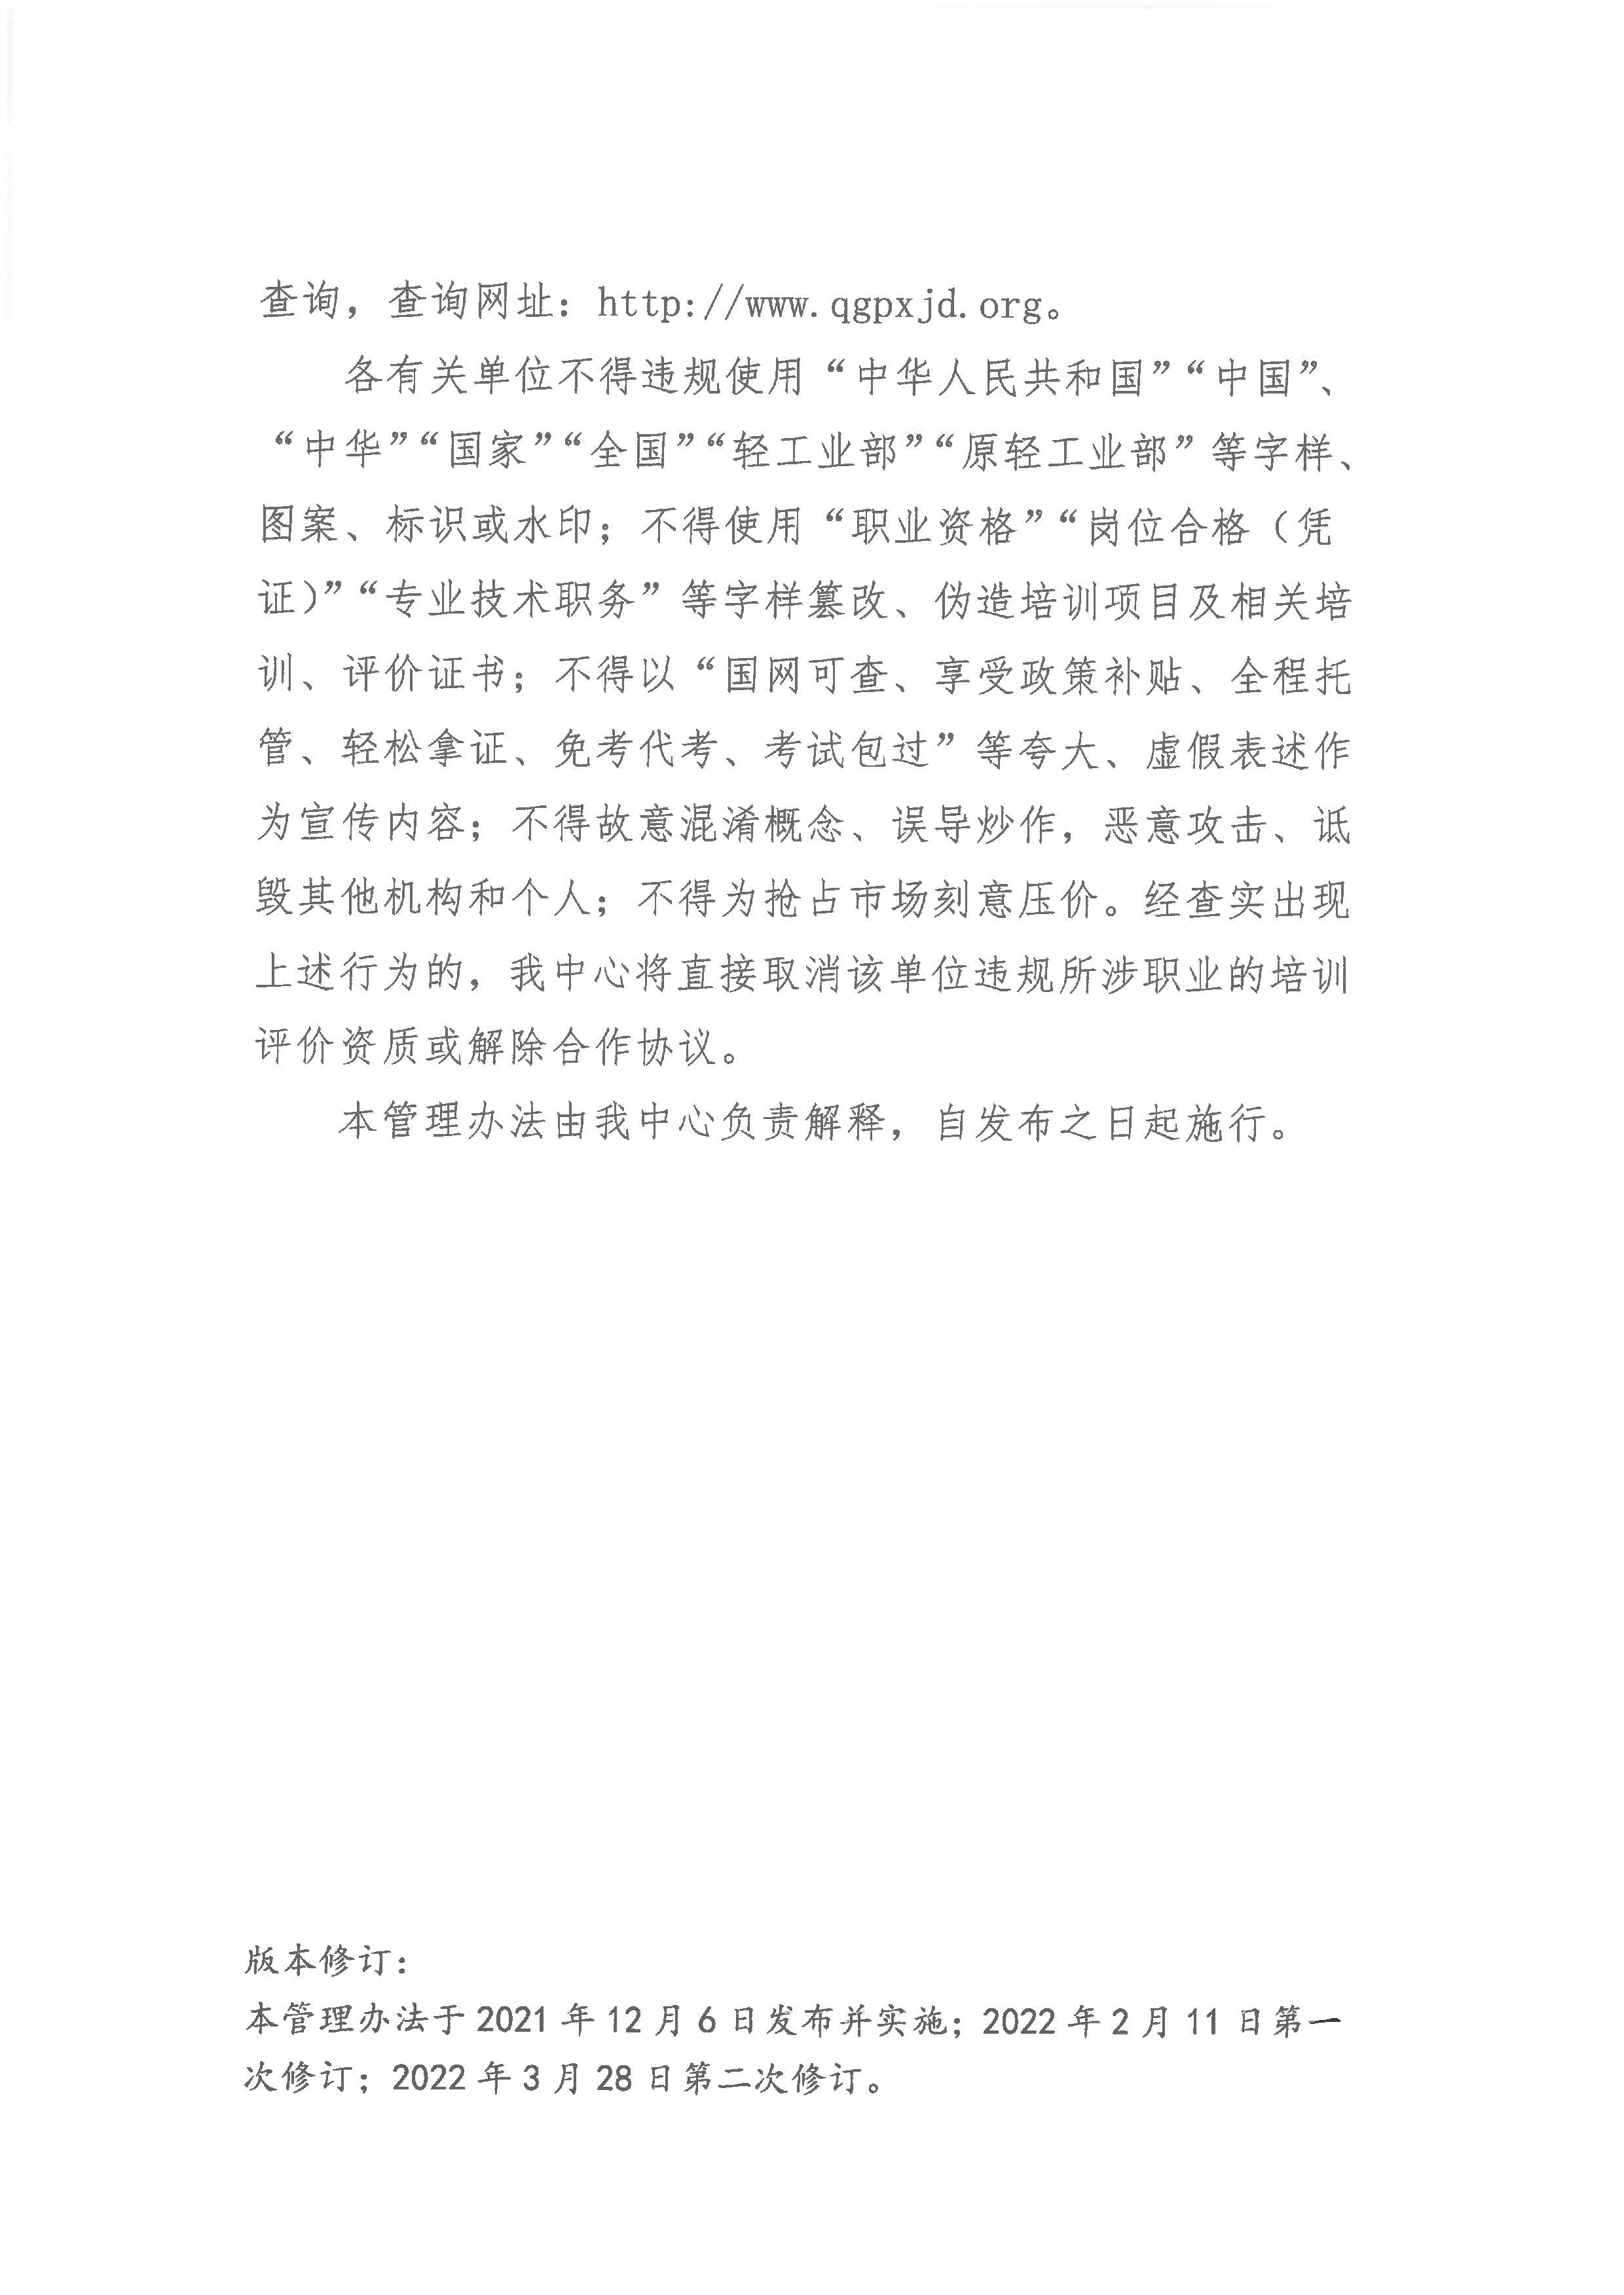 关于印发《中国轻工业联合会轻工业职业能力评价中心宣传工作管理办法》的通知(1)_页面_3.jpg